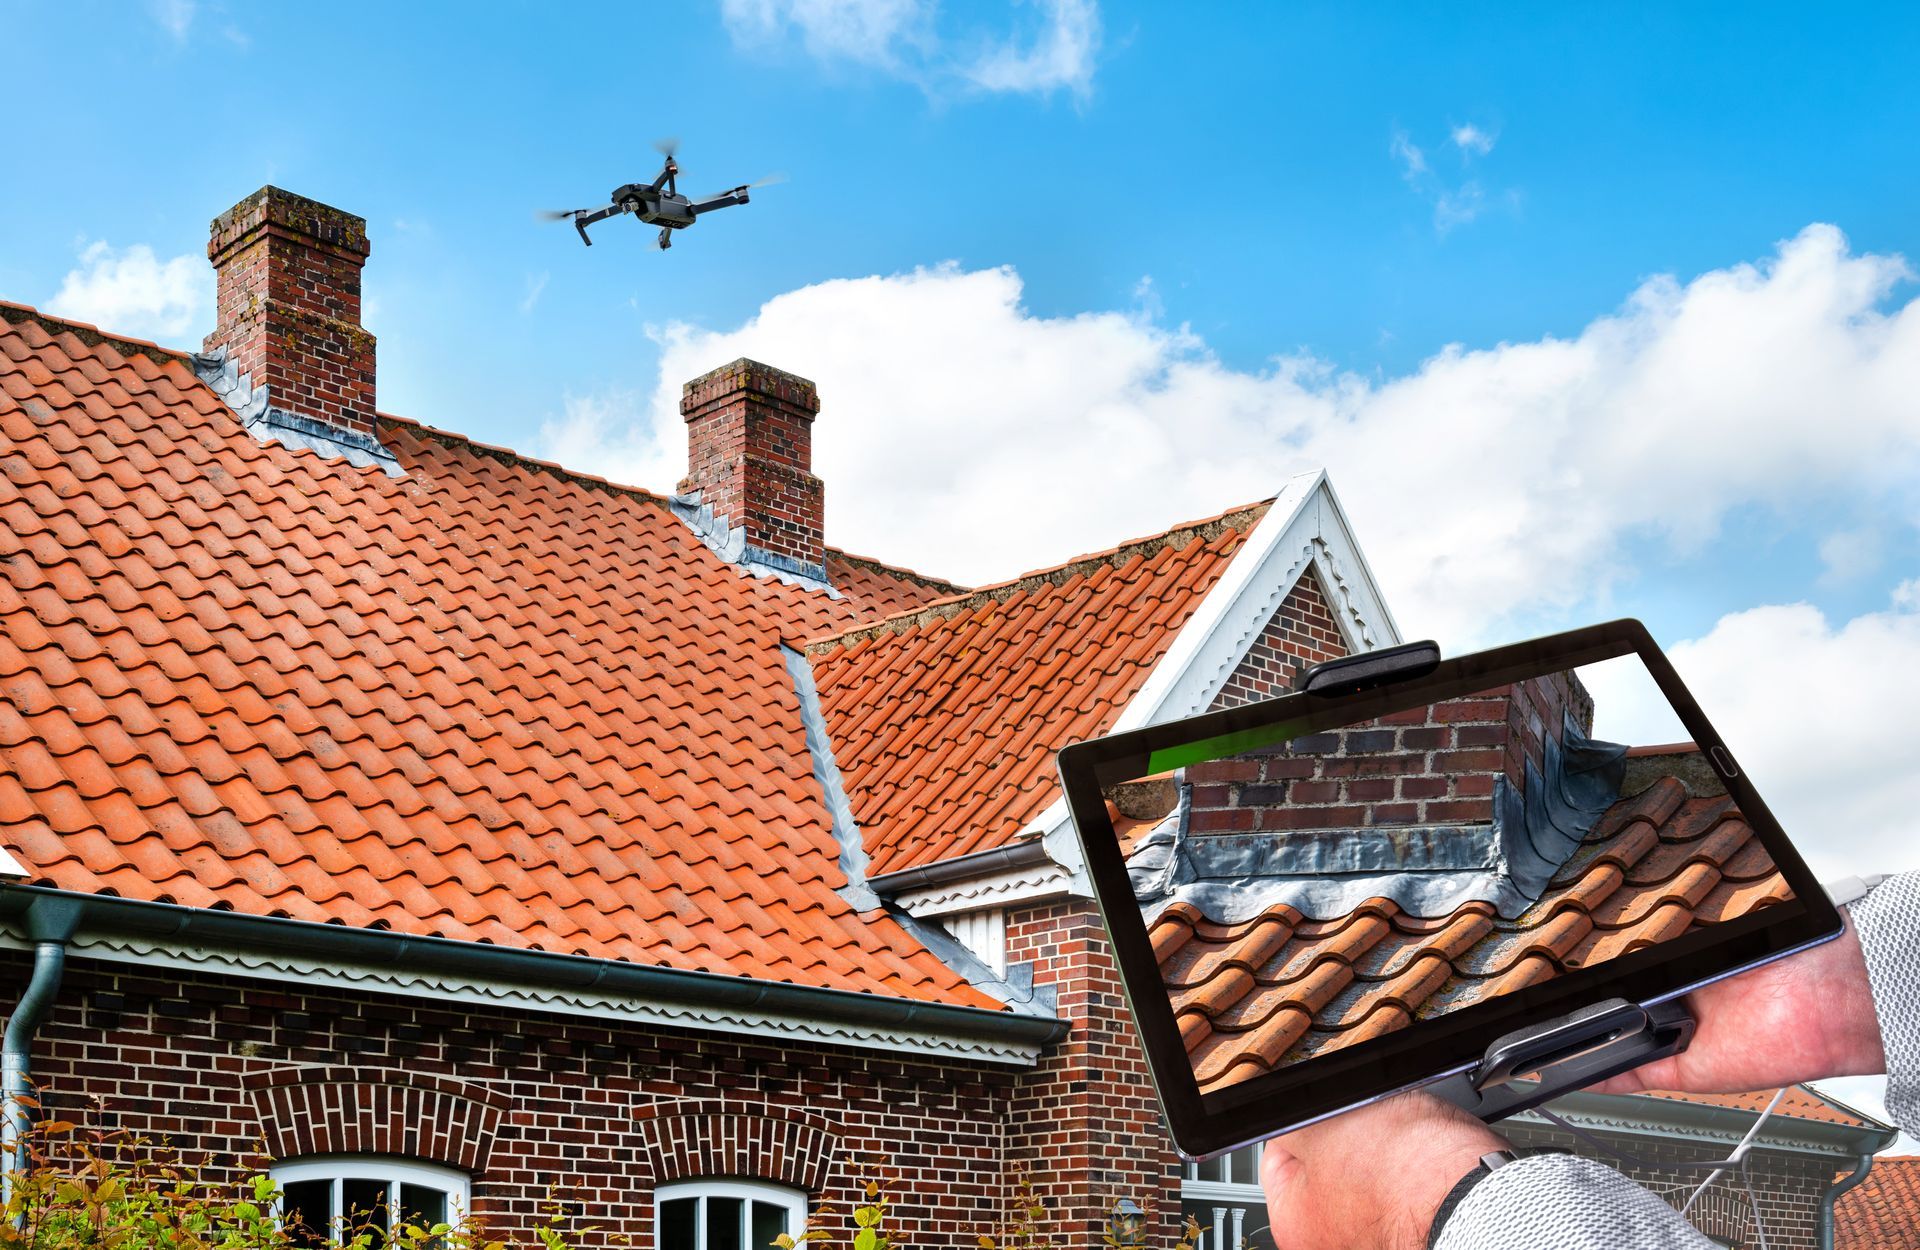 Un drone qui survole un toit en tuiles